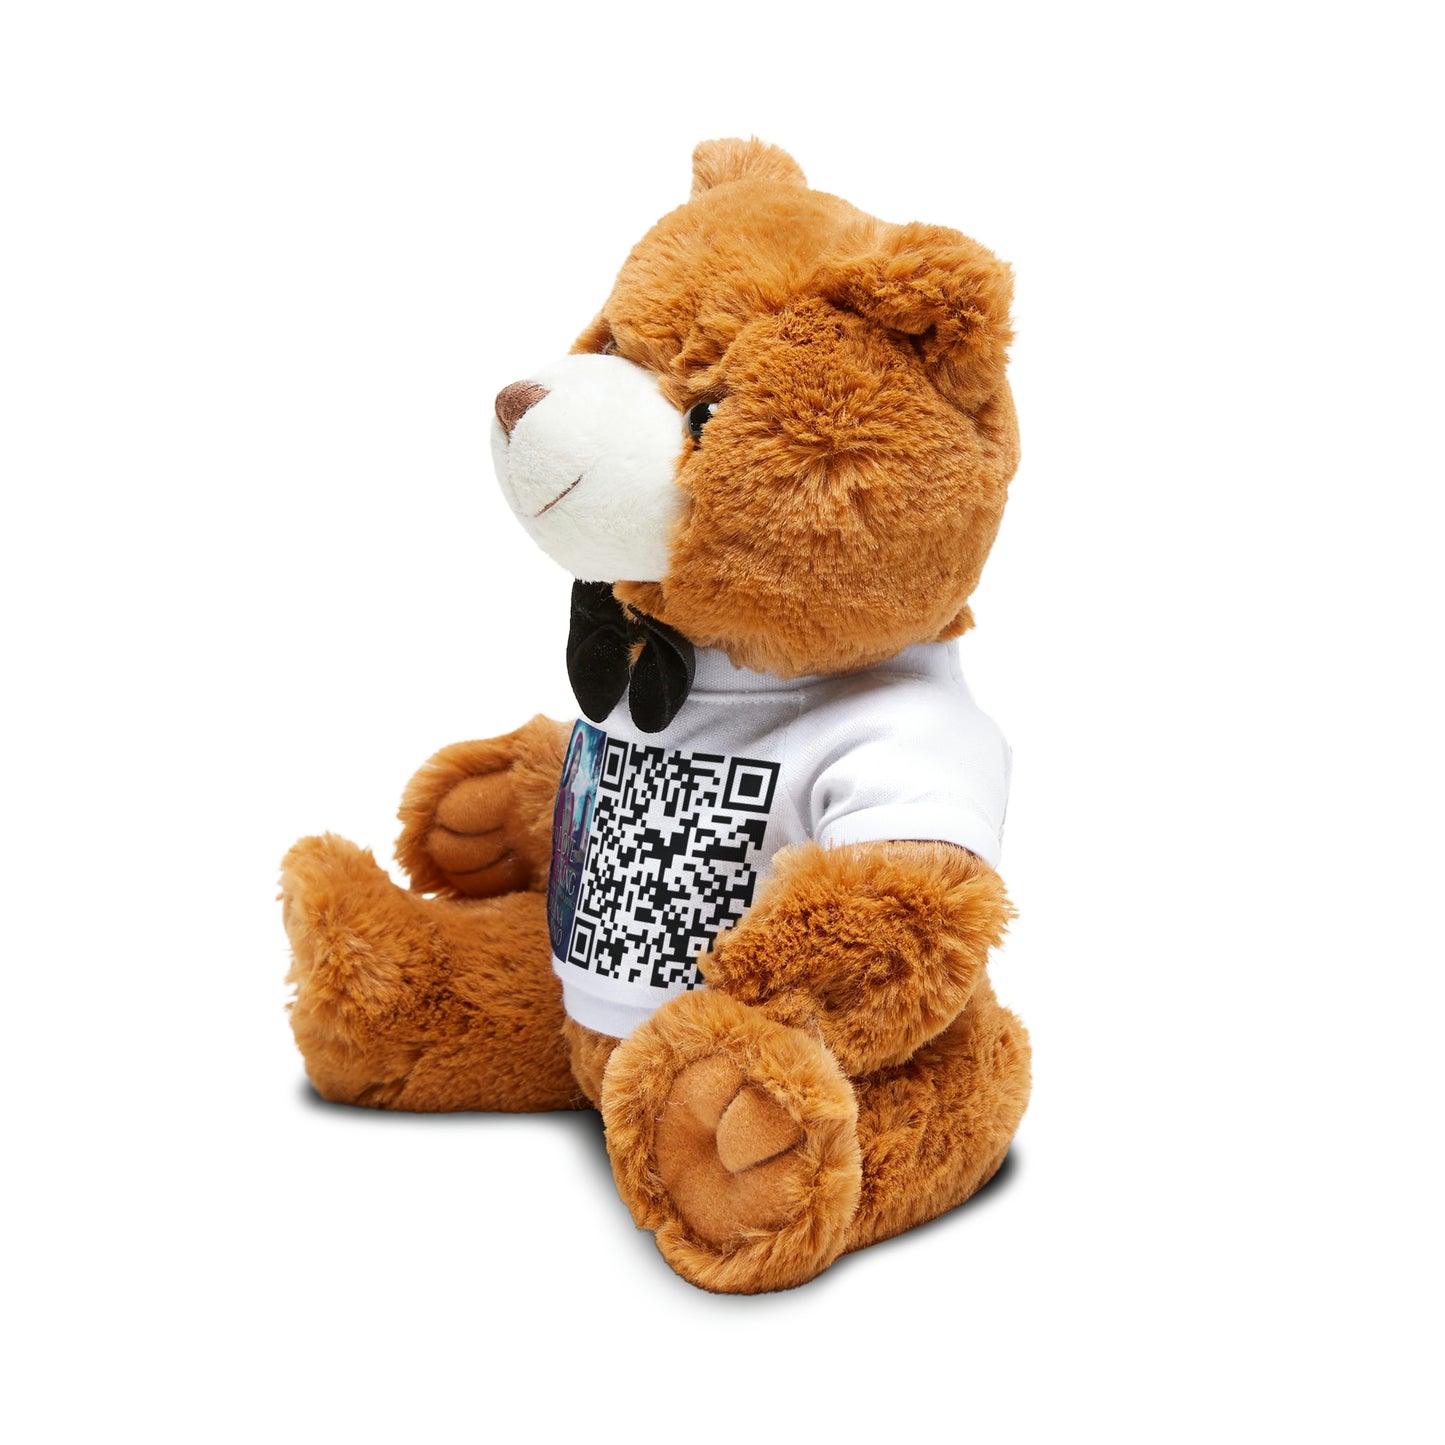 To Love A King - Teddy Bear